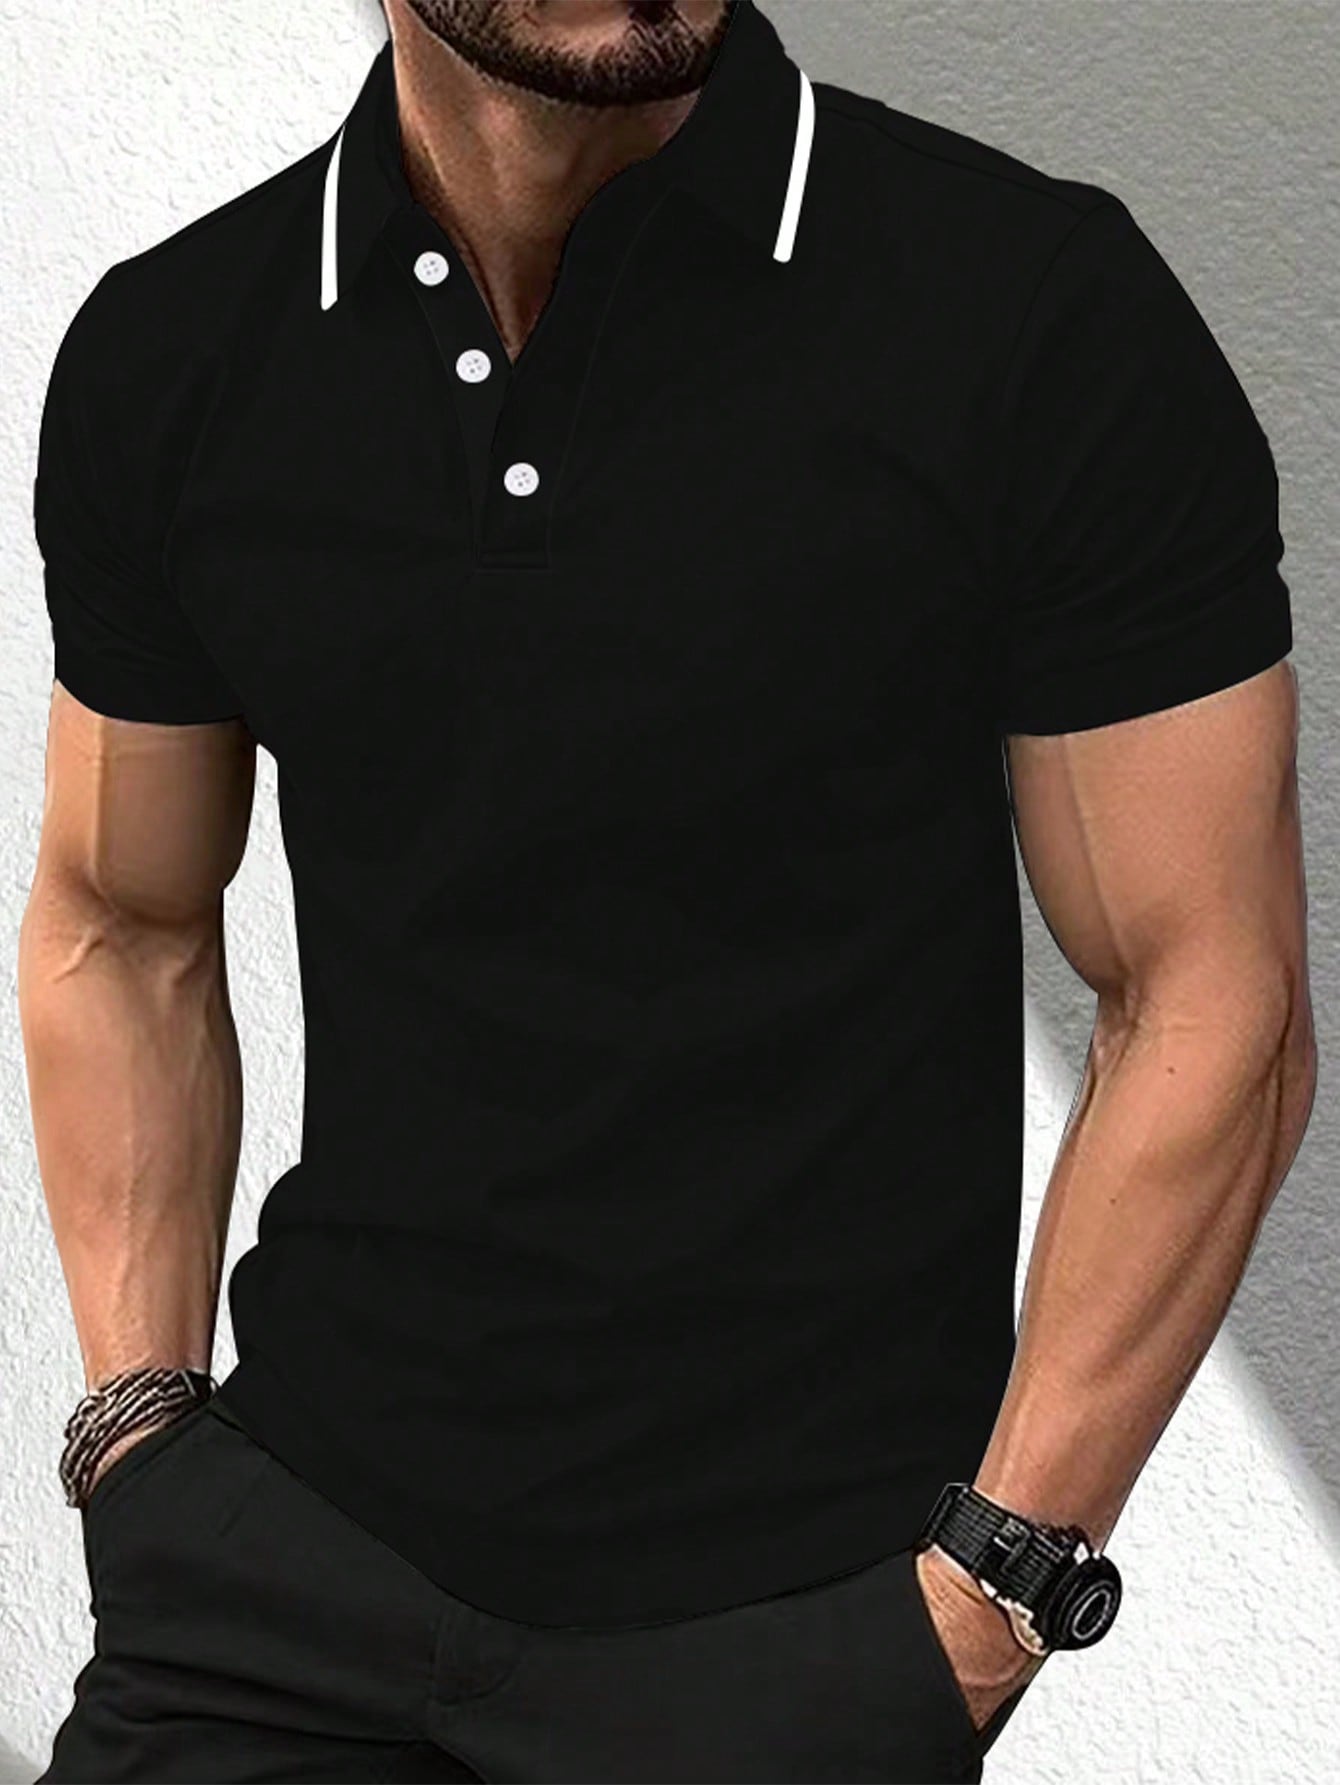 Мужская повседневная рубашка-поло с короткими рукавами и планкой на пуговицах Manfinity Mode, черный рубашка мужская с клетчатым принтом гавайская блуза с воротником стойкой короткими рукавами на пуговицах свободная повседневная одежда